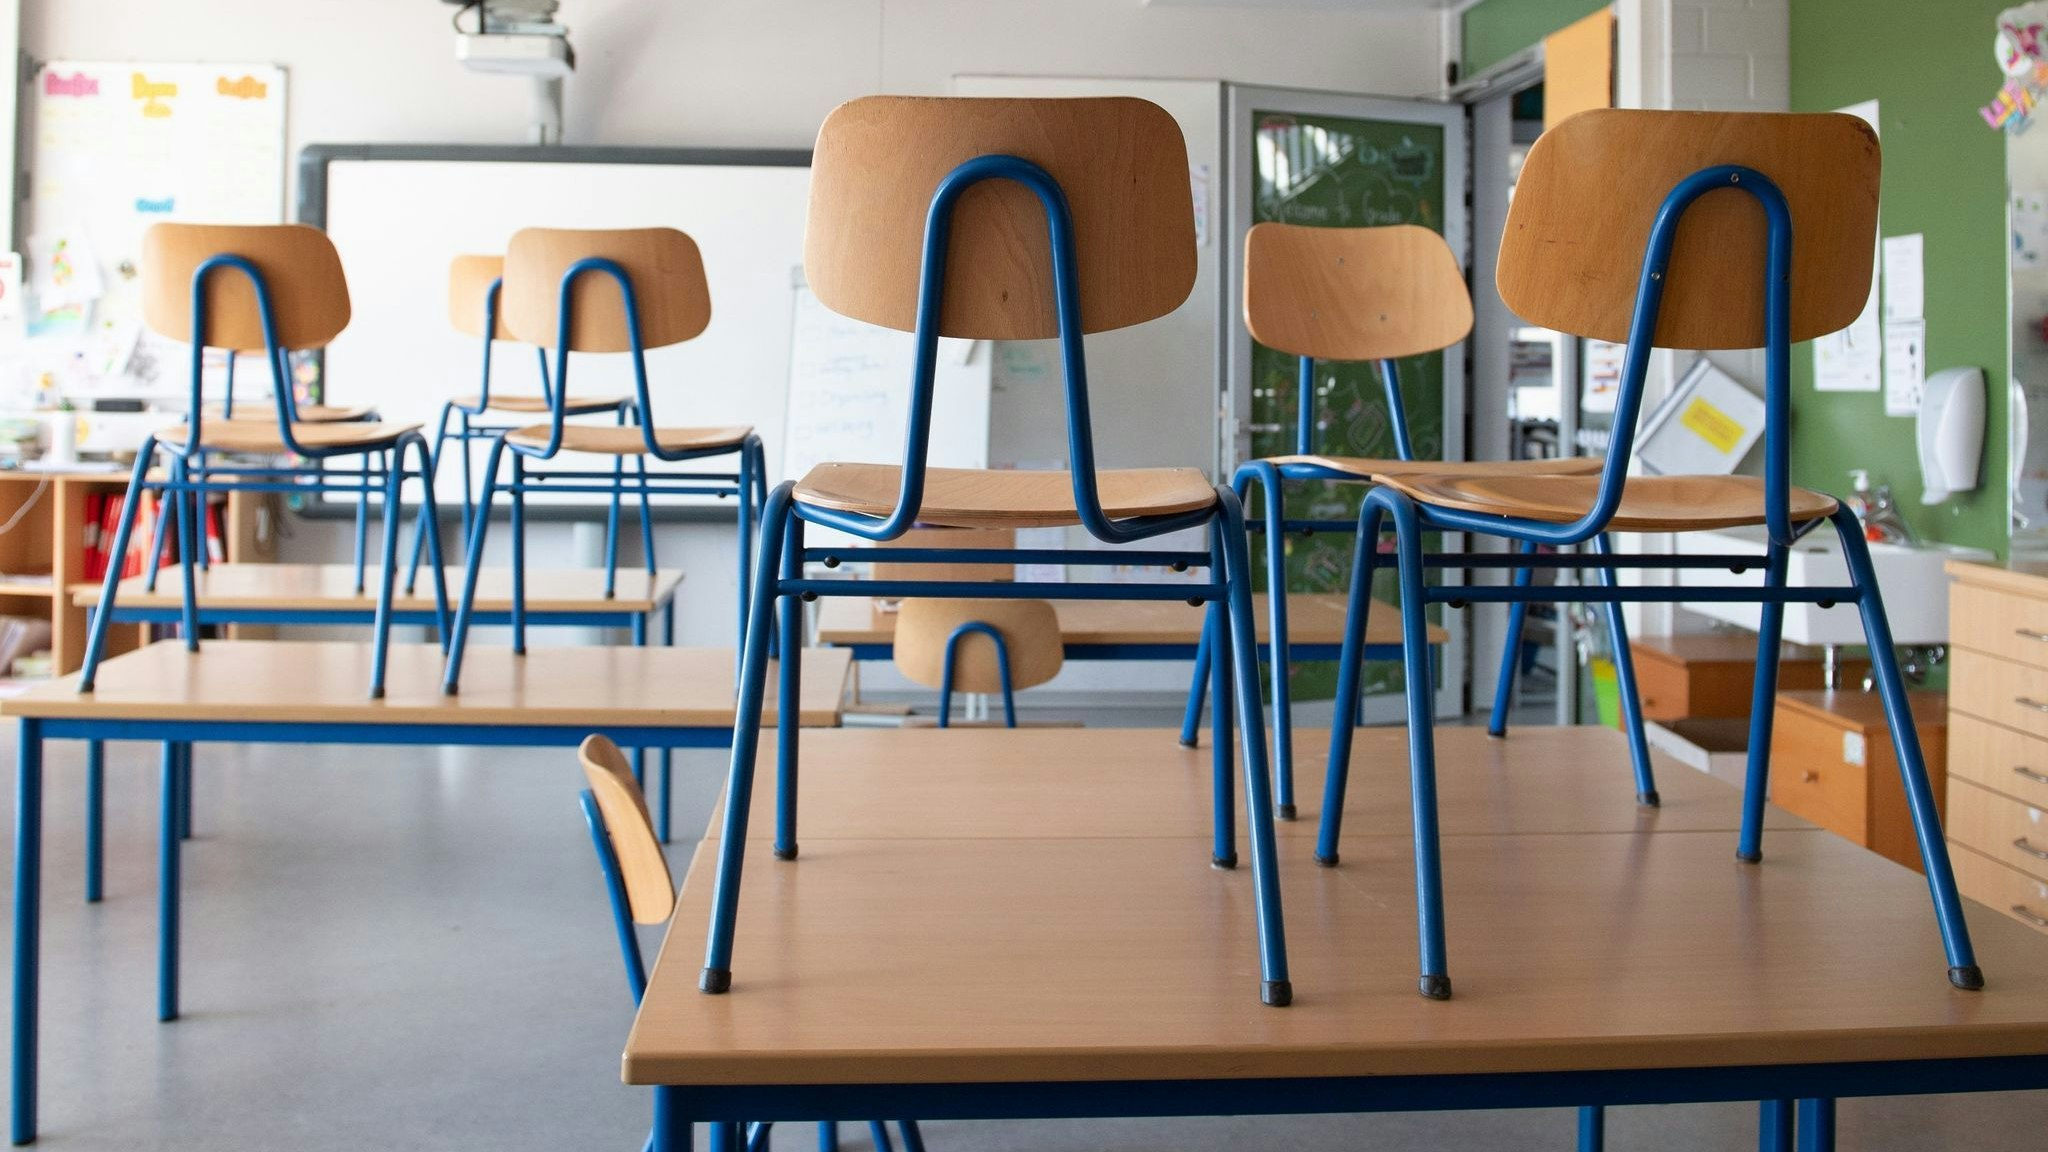 Stühle stehen in einem Klassenzimmer auf den Tischen. Foto: dpa/Kahnert